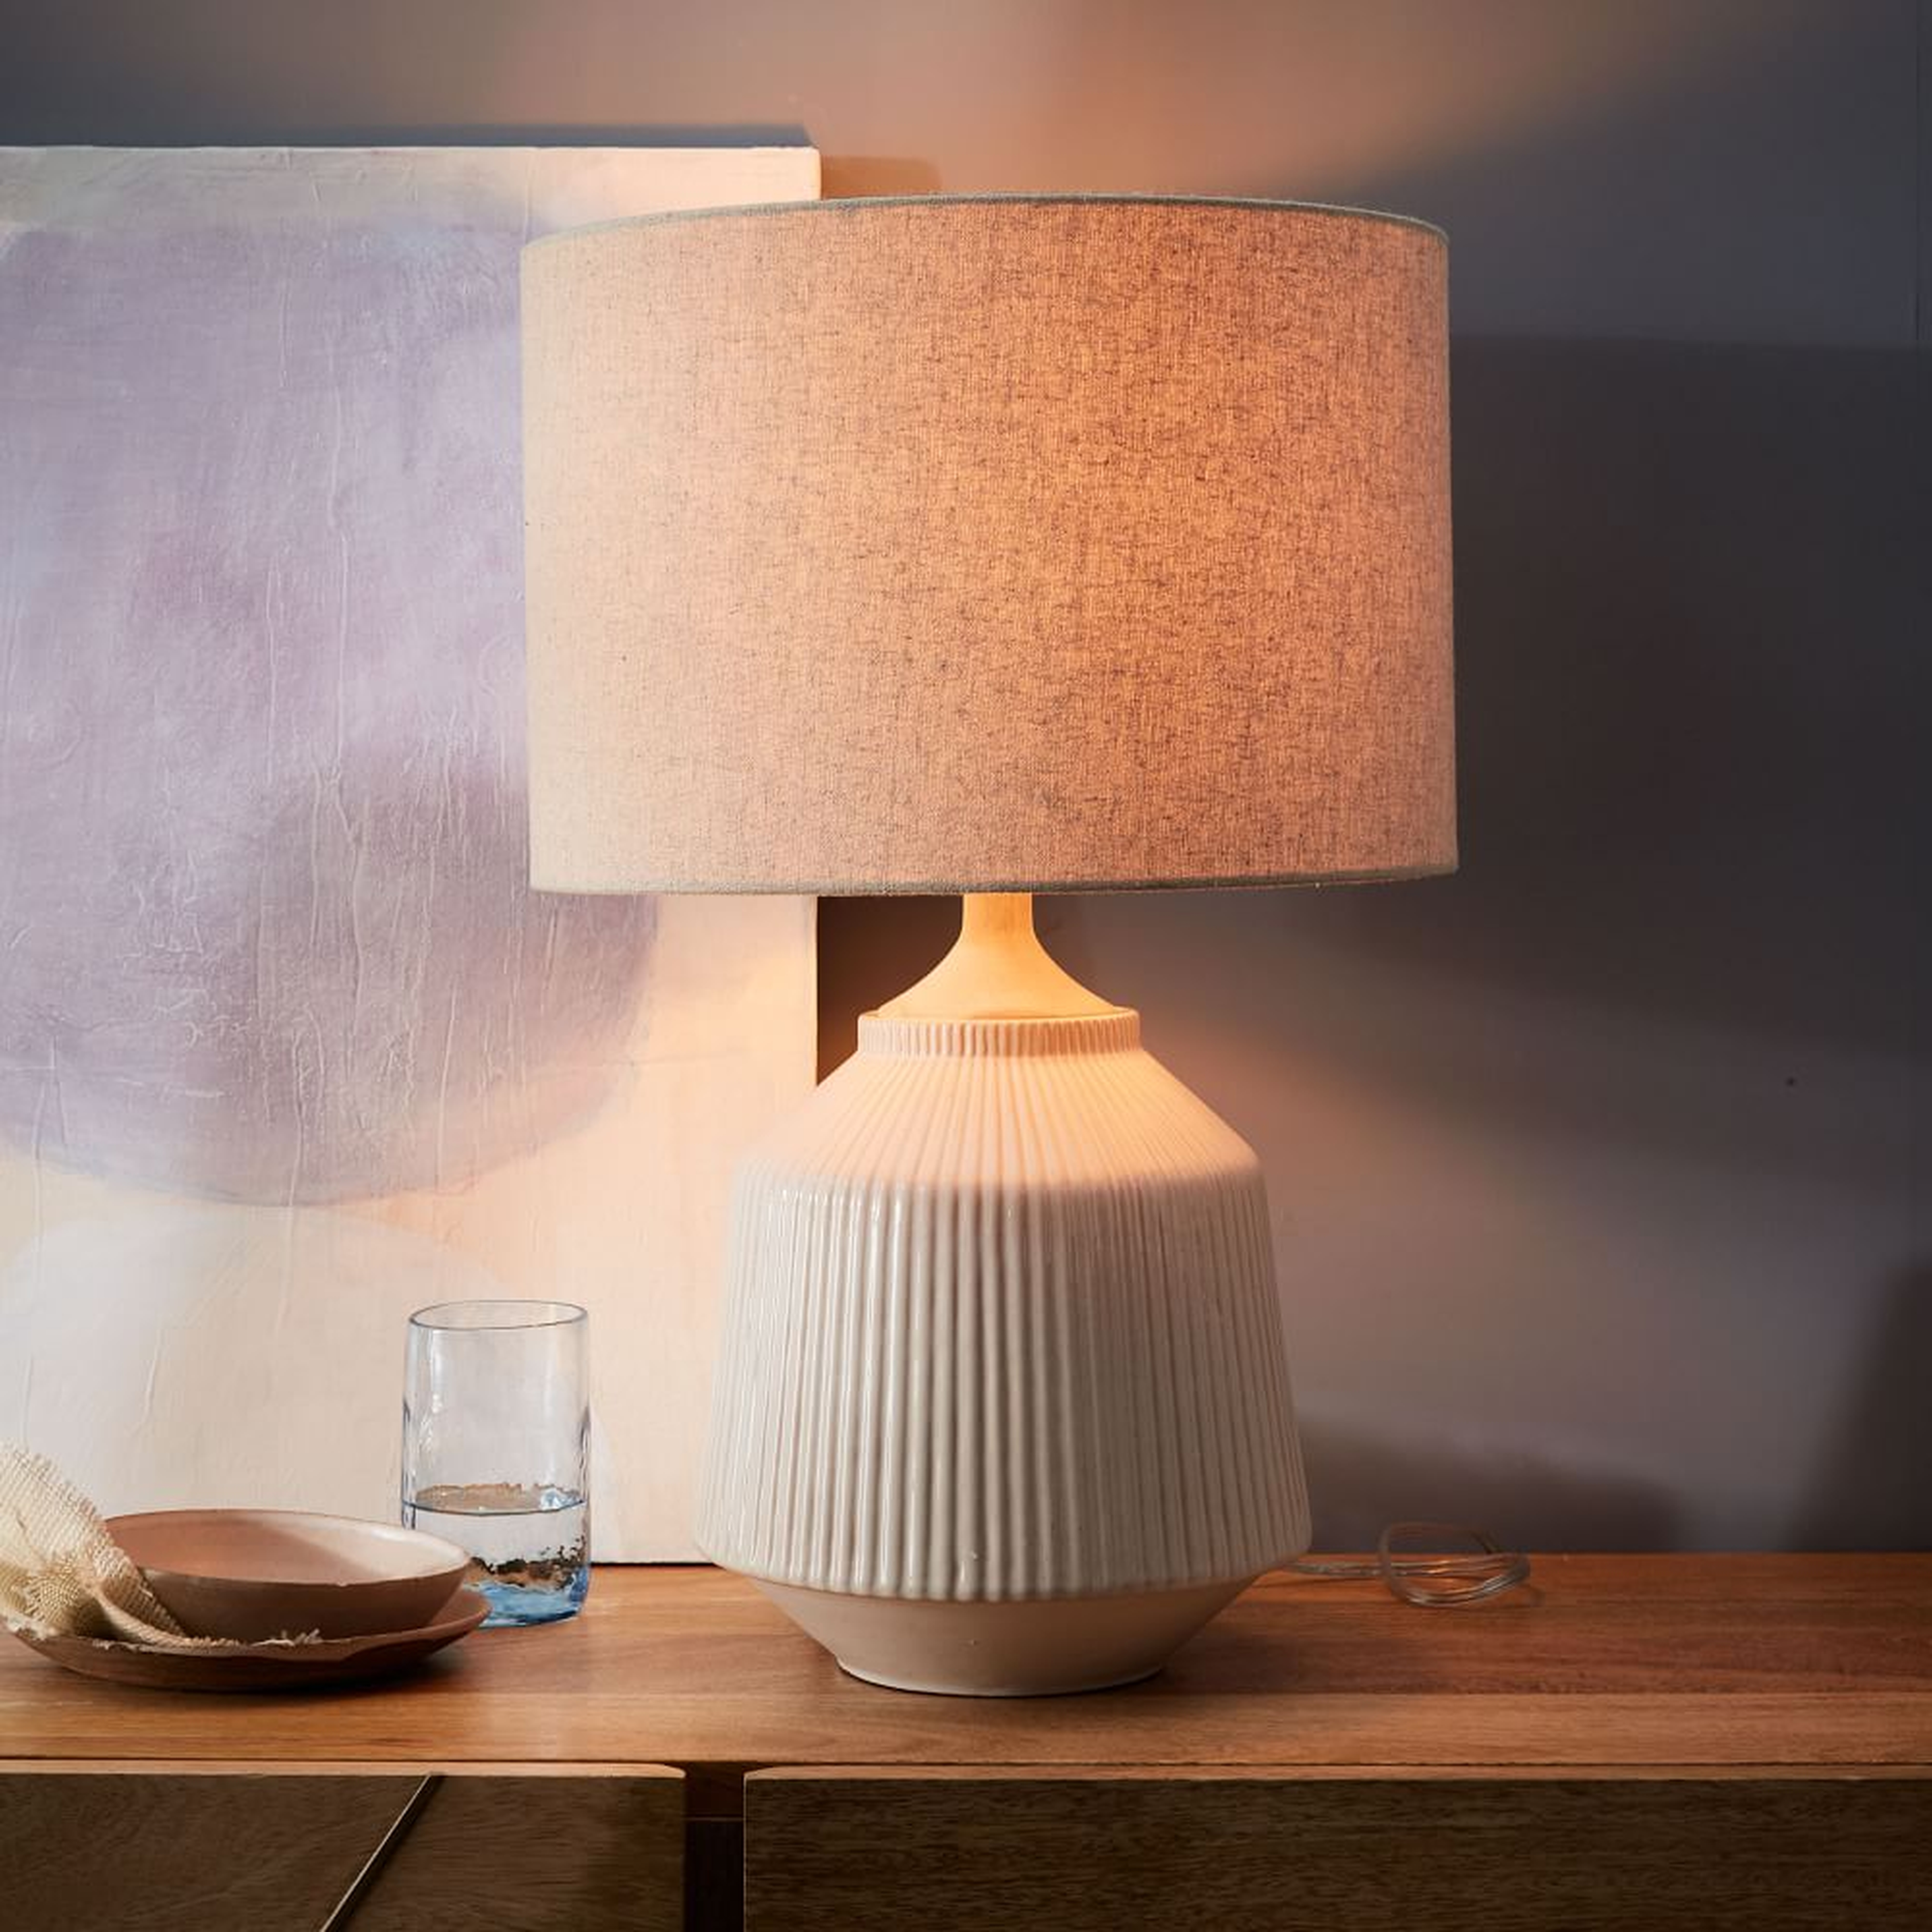 Roar + Rabbit Ceramic Table Lamp, White, Tall - West Elm